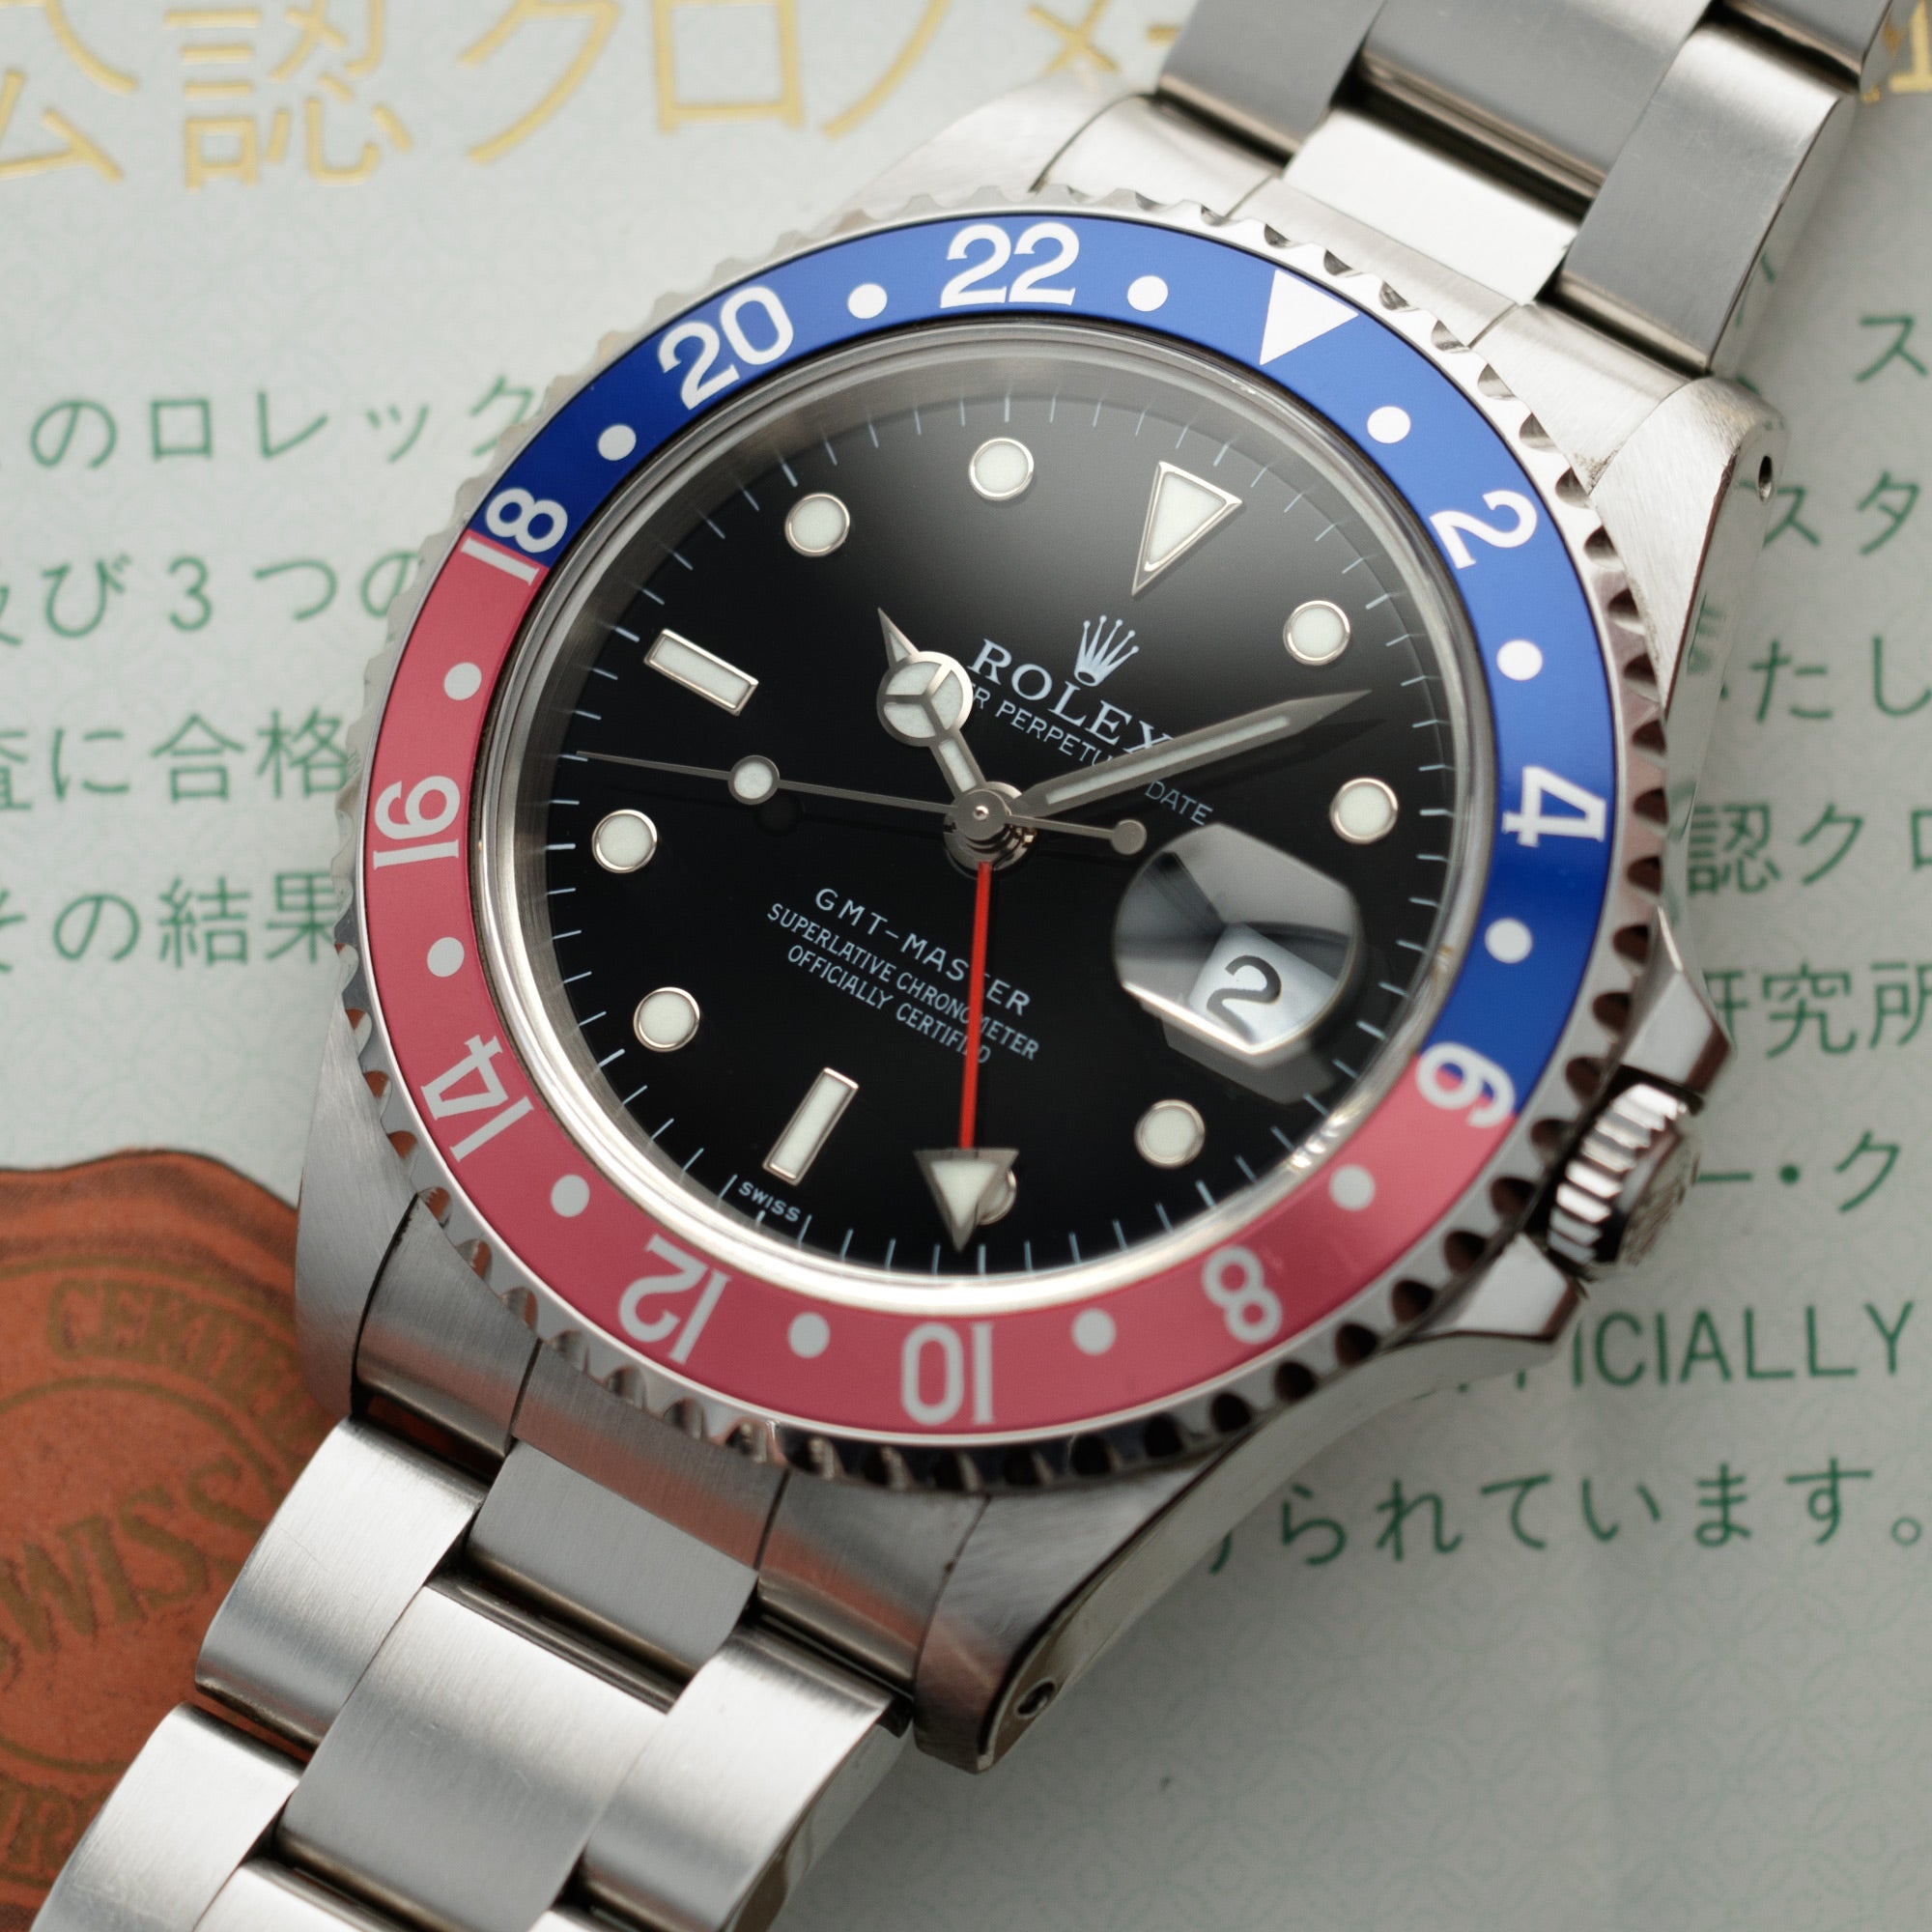 Rolex - Rolex Steel Pepsi GMT-Master Ref. 16700 with Original Warranty - The Keystone Watches